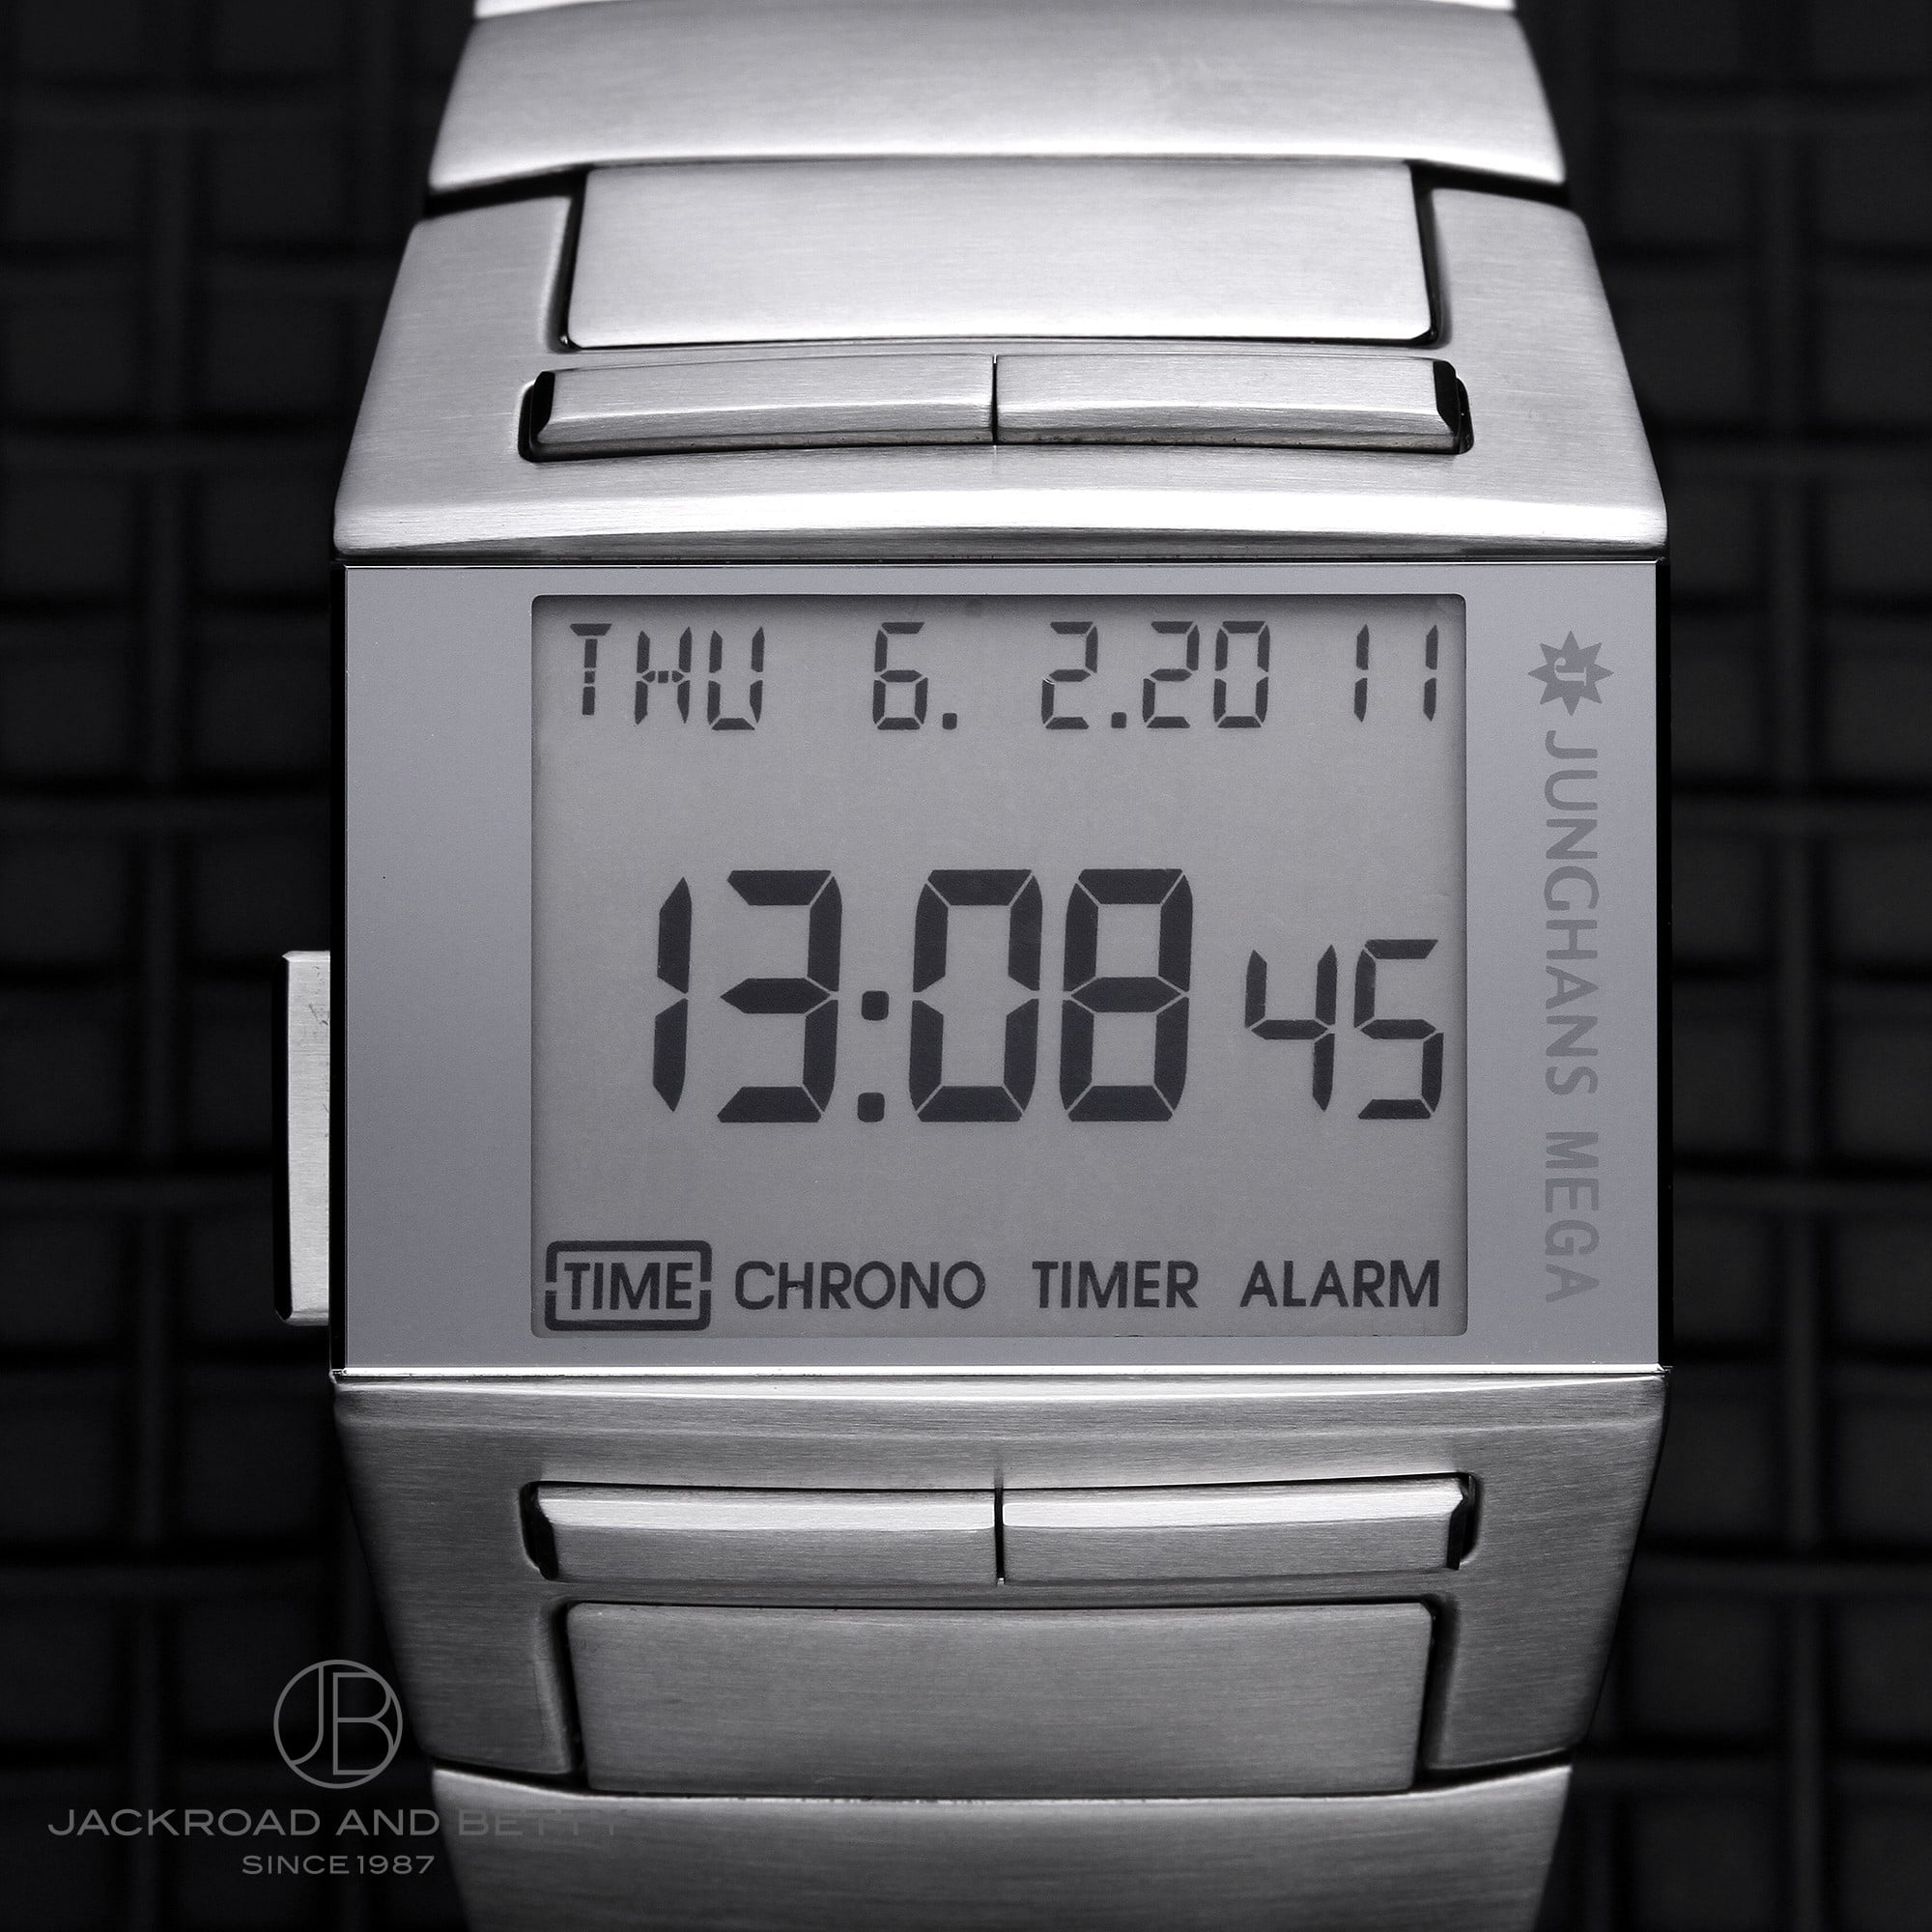 MEGE1000 メンズ腕時計